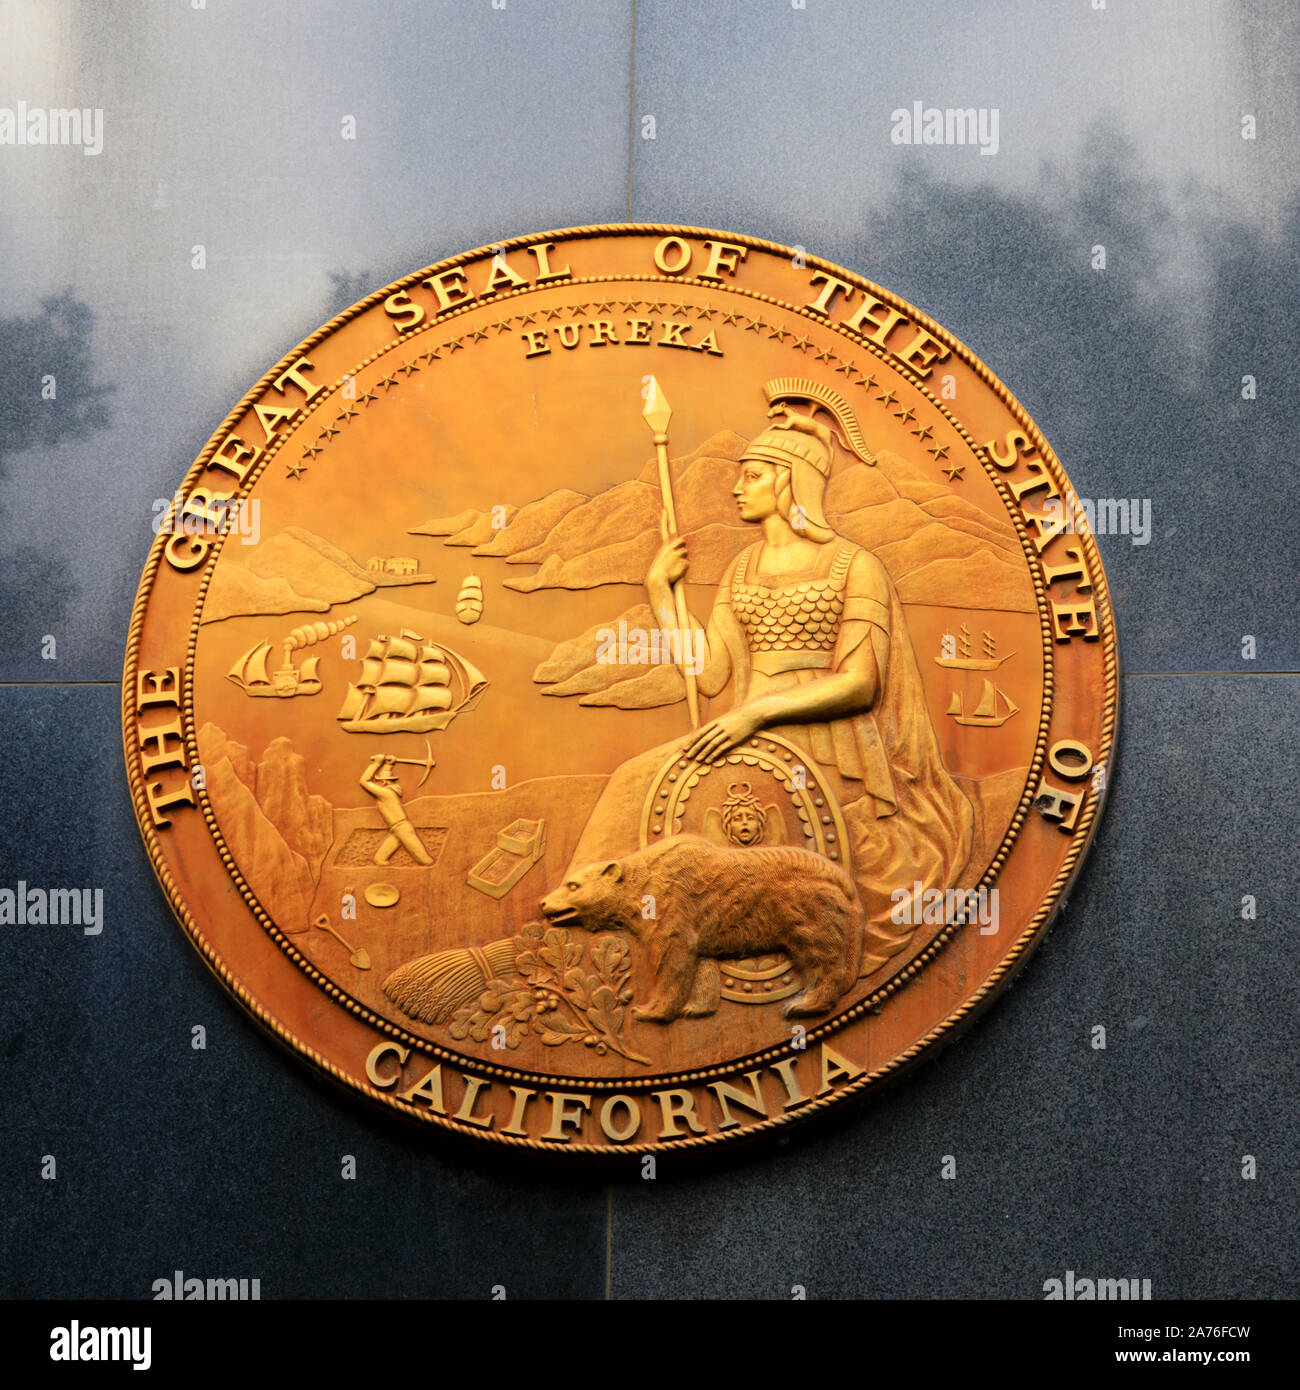 Das große Siegel des Staates Kalifornien auf der Seite der staatlichen Mittel Gebäude 1416 9th Street, Sacramento, Kalifornien, USA Stockfoto